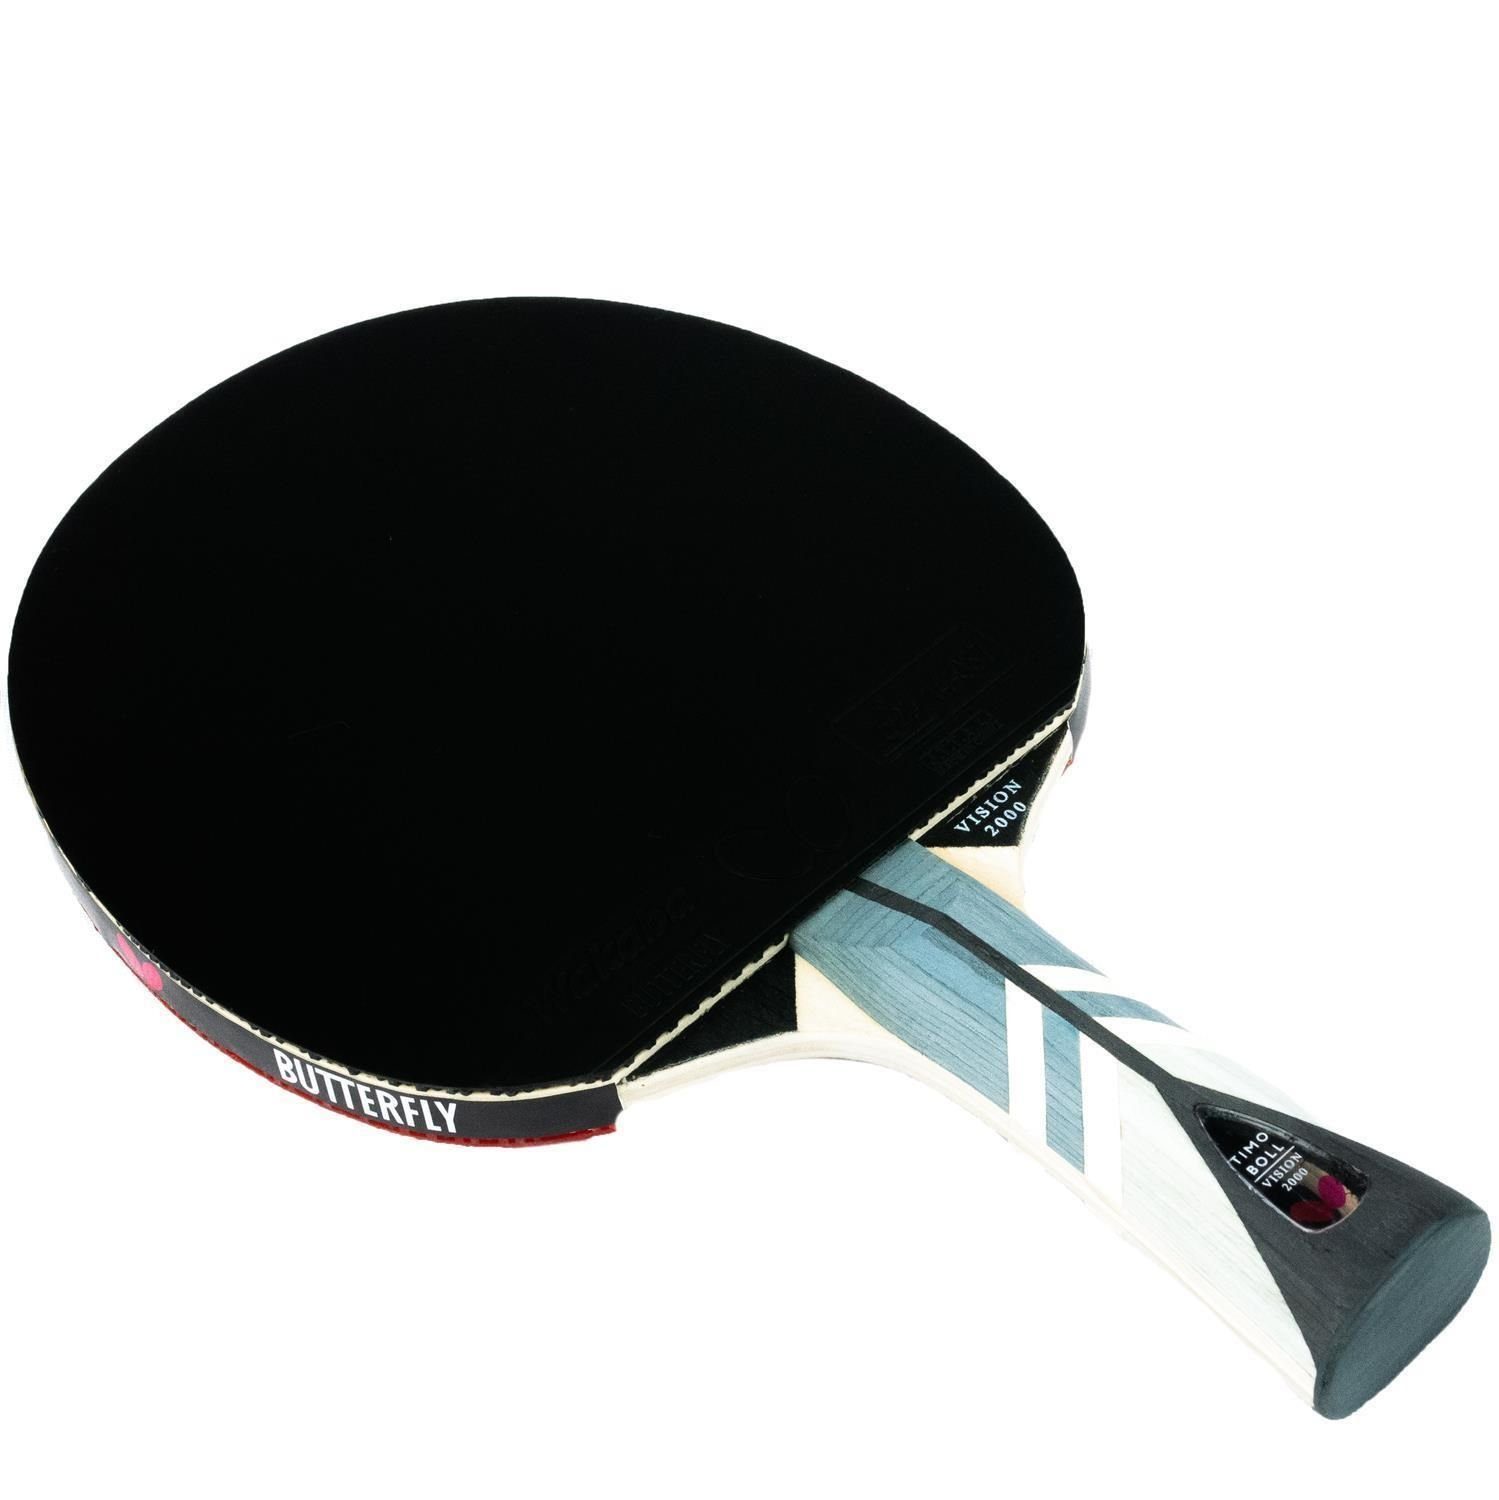 Butterfly Tischtennisschläger Set Drive Bat Bälle, Table Schläger Racket Tischtennisset + Case 2x 2000 Boll Tennis Timo Tischtennis 1 + Vision 2x